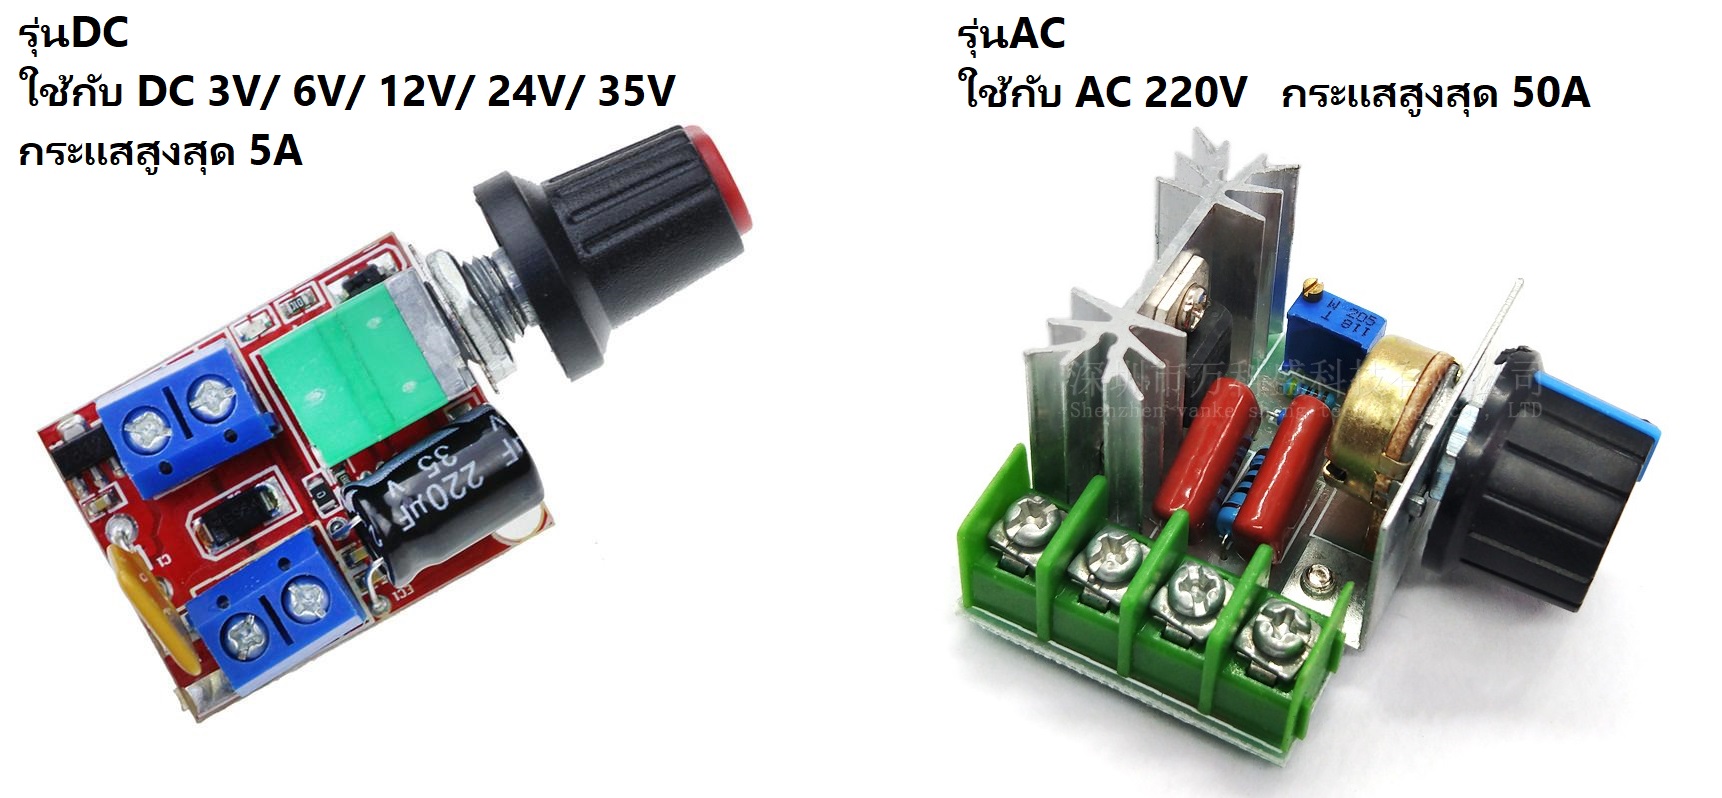 ปรับความเร็วรอบพัดลมหรือปรับความสว่างLED ใช้กับ DC 3V/ 6V/ 12V/ 24V/ 35V   AC 220V